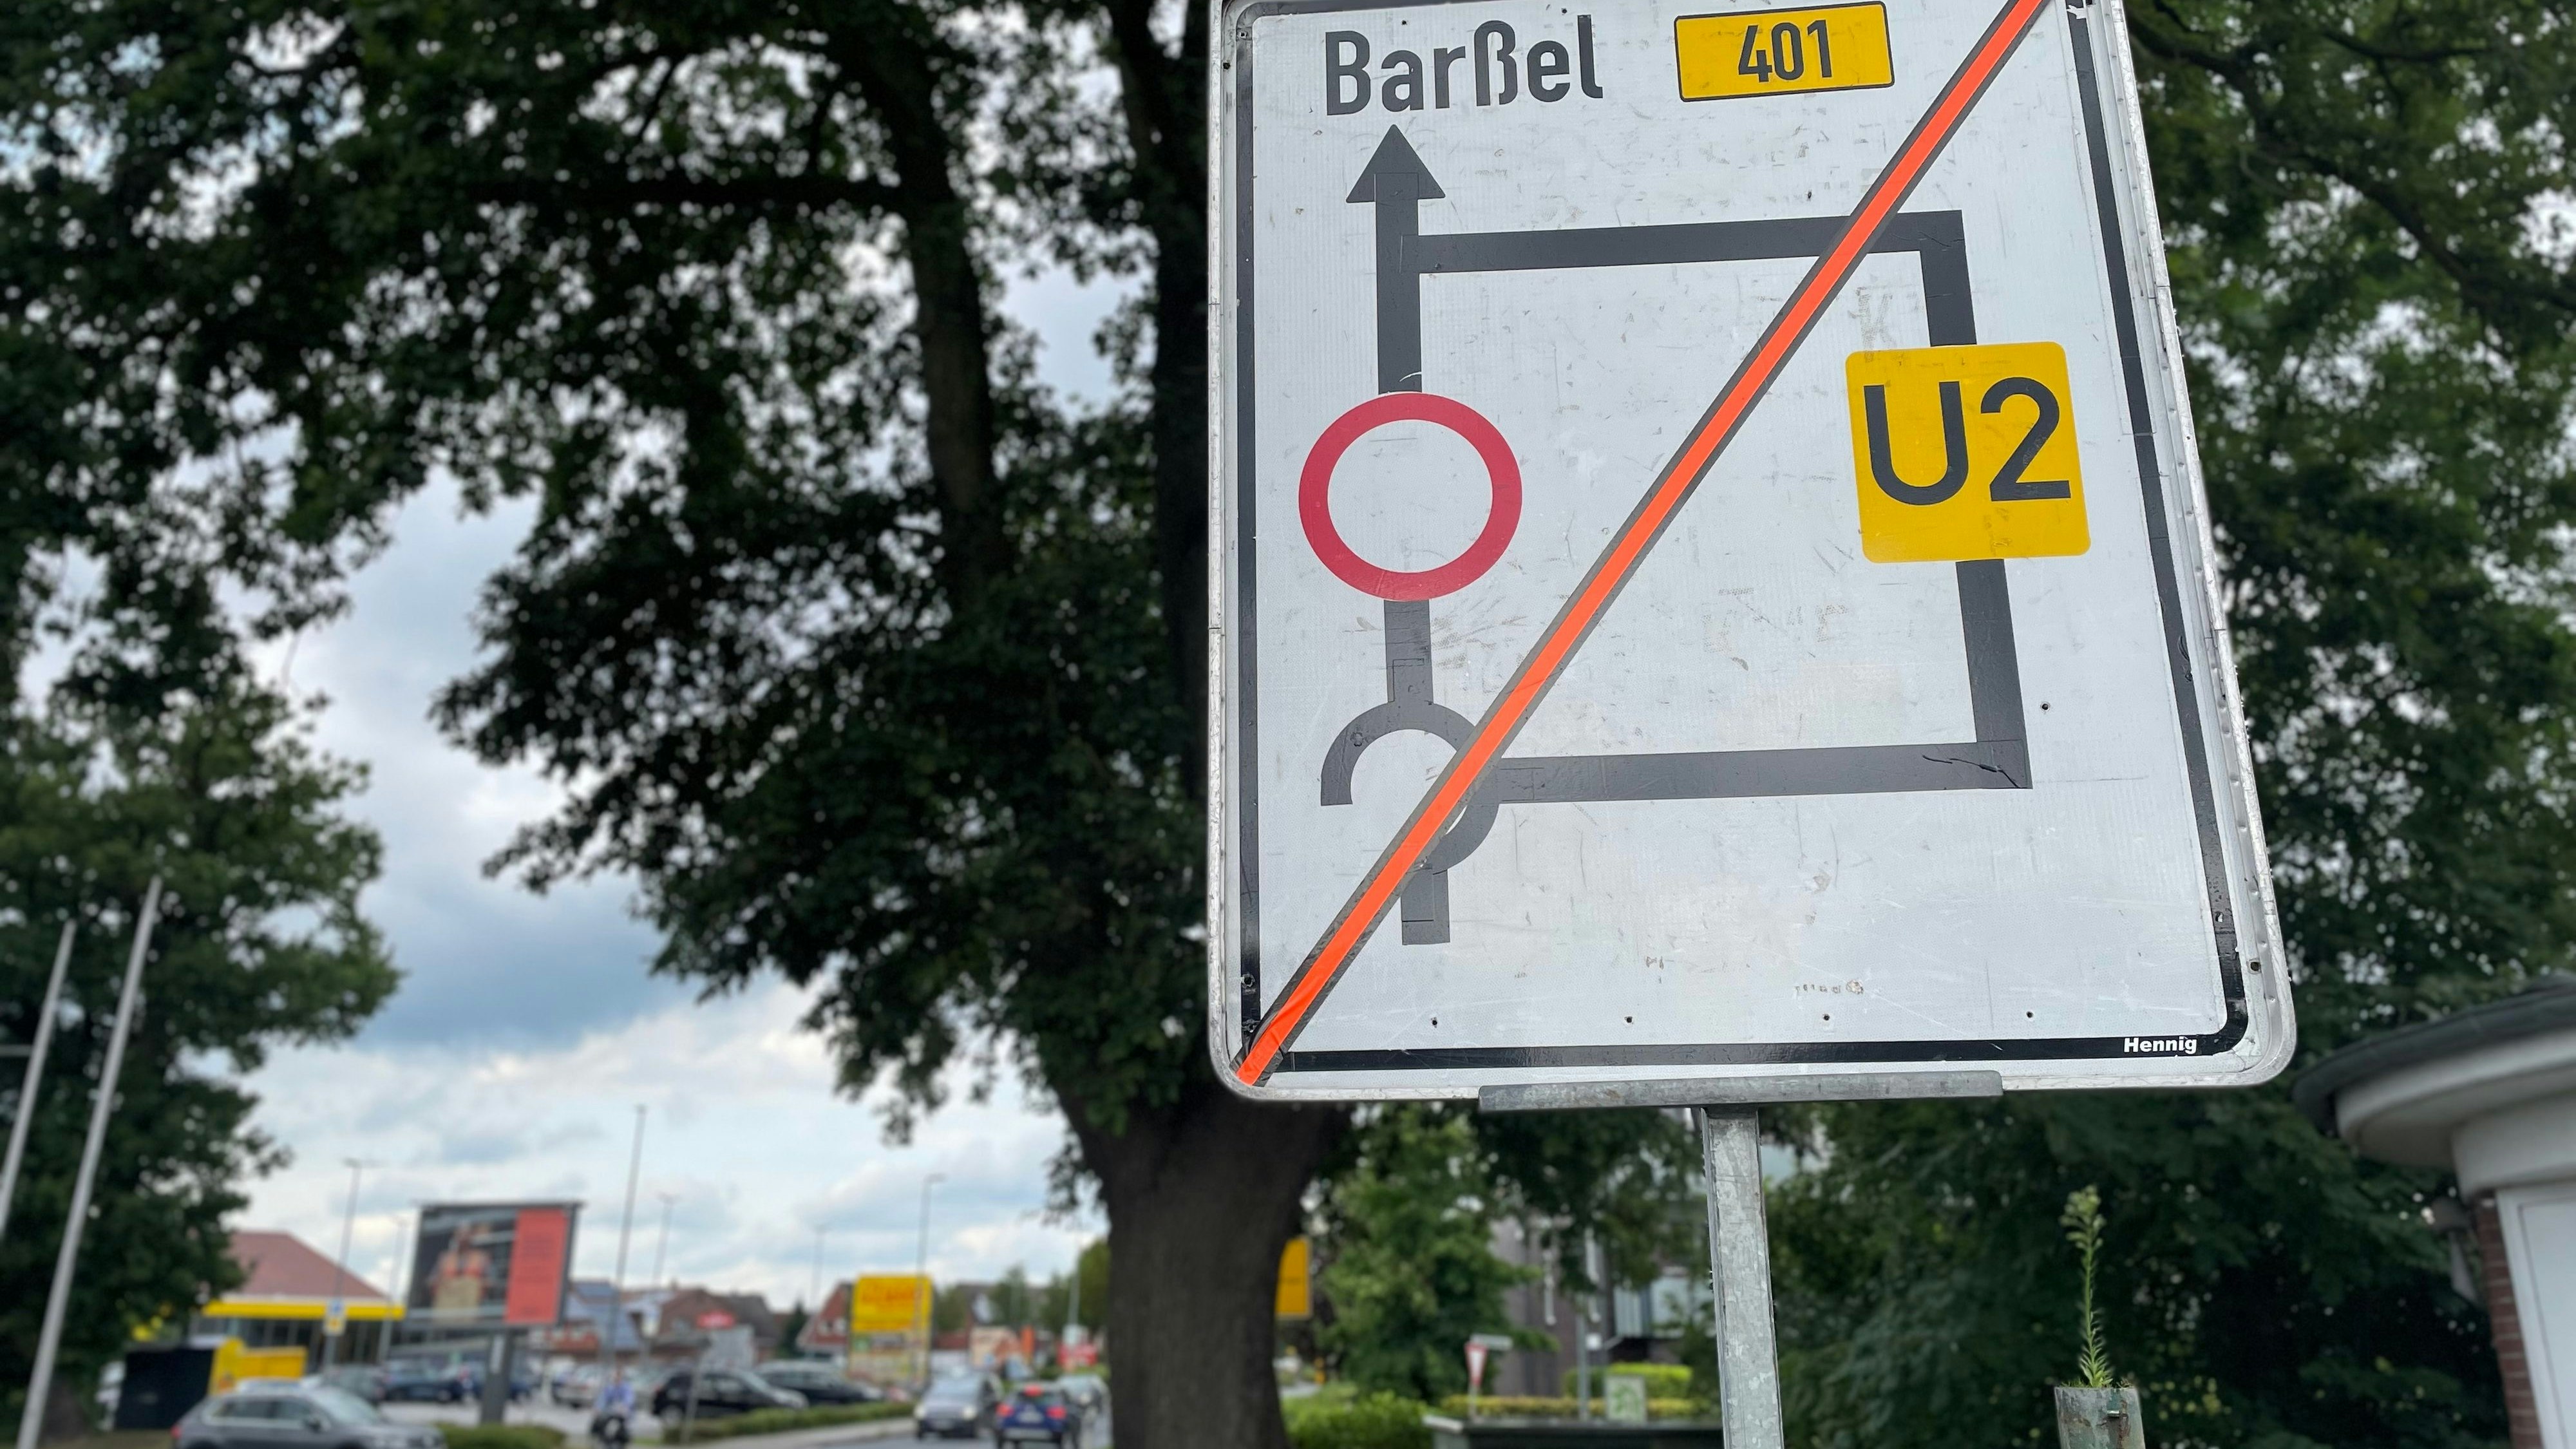 Ab dem 1. August wird die Barßeler Straße zur Sackgasse, da die Kreuzung an der B 401 gesperrt wird. Foto: Hahn